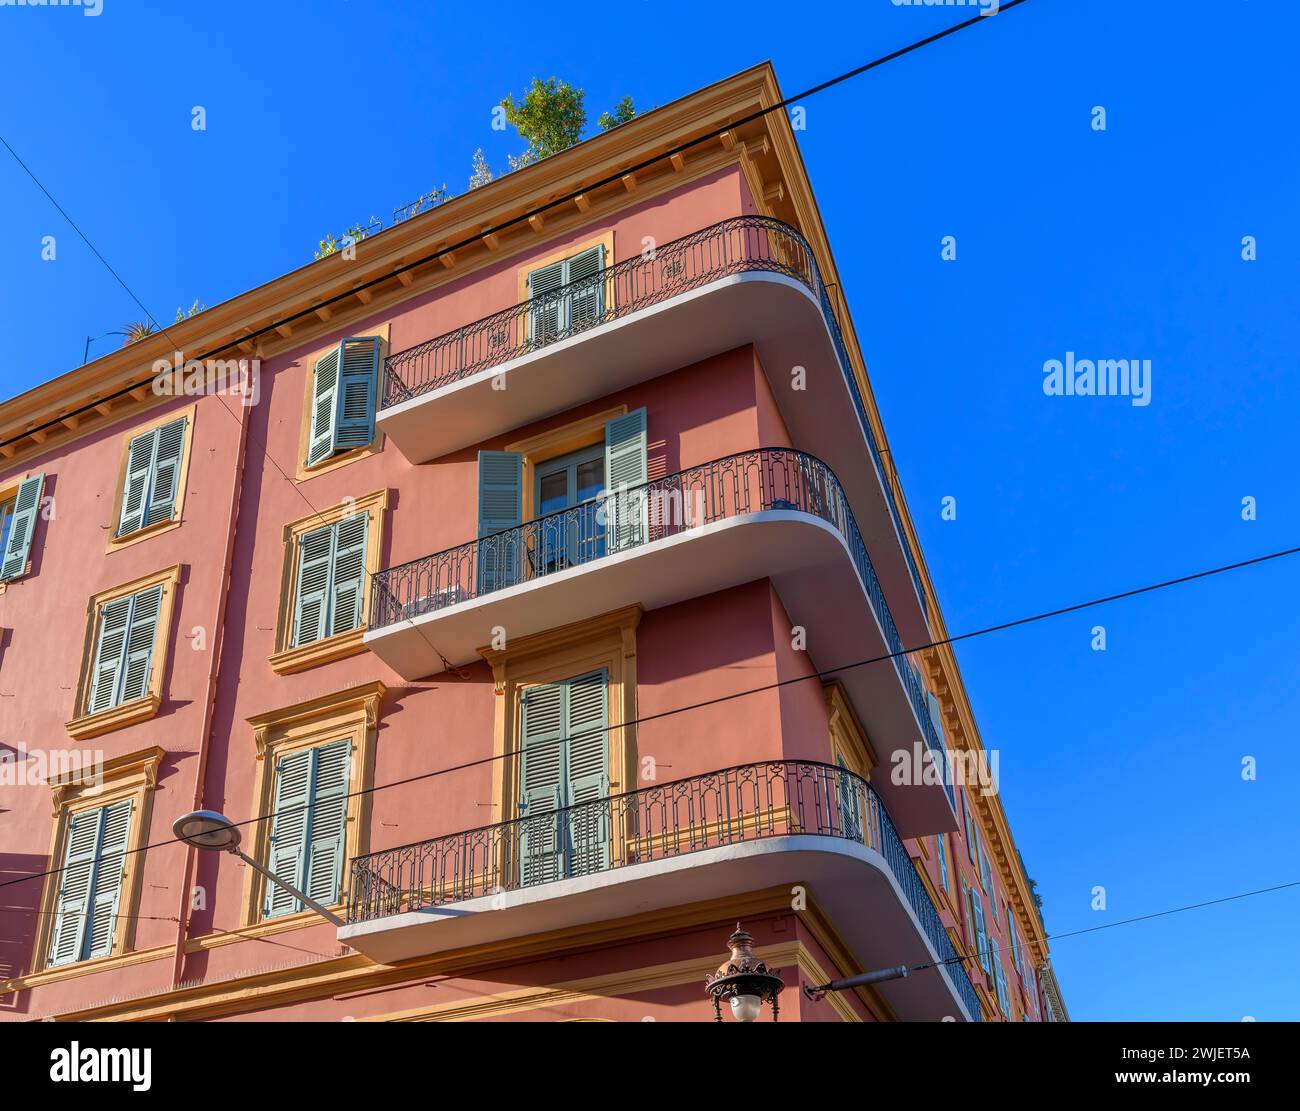 Appartements chic de couleur rose poussiéreux avec volets bleu-vert au Cœur de Nice - le cœur de Nice. La Côte d'Azur, France. Banque D'Images